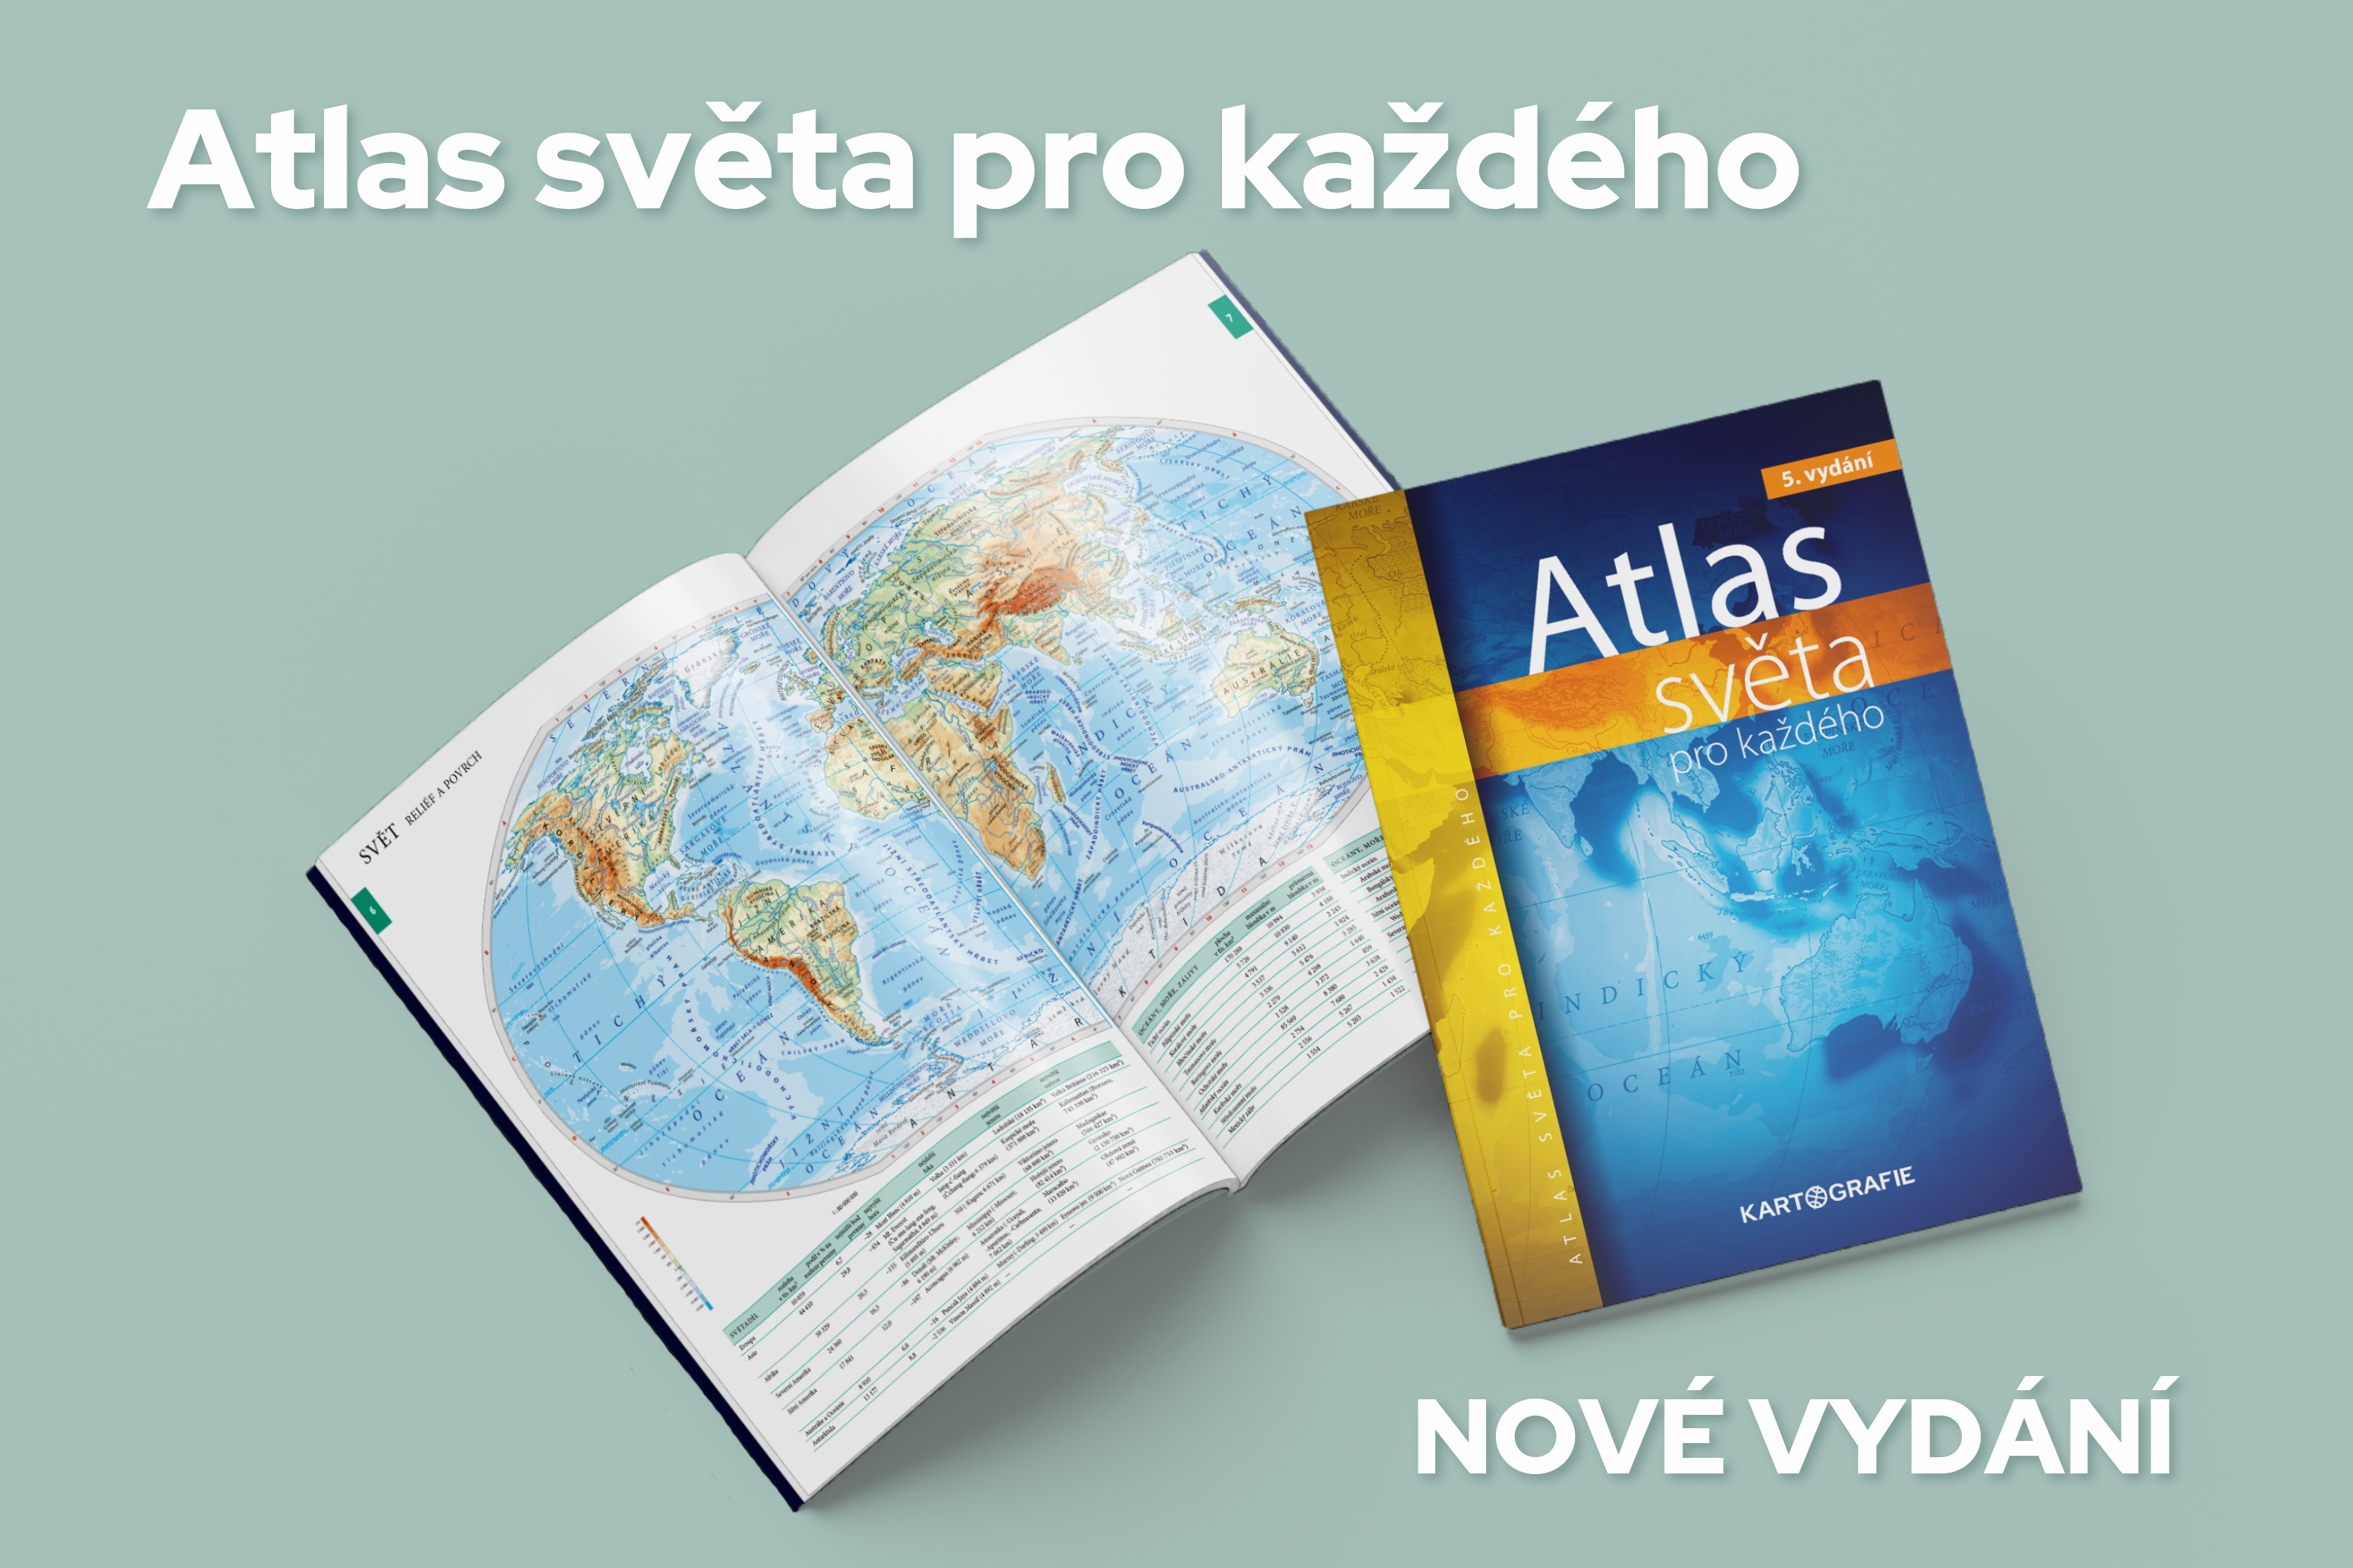 Atlas světa pro každého v novém vydání